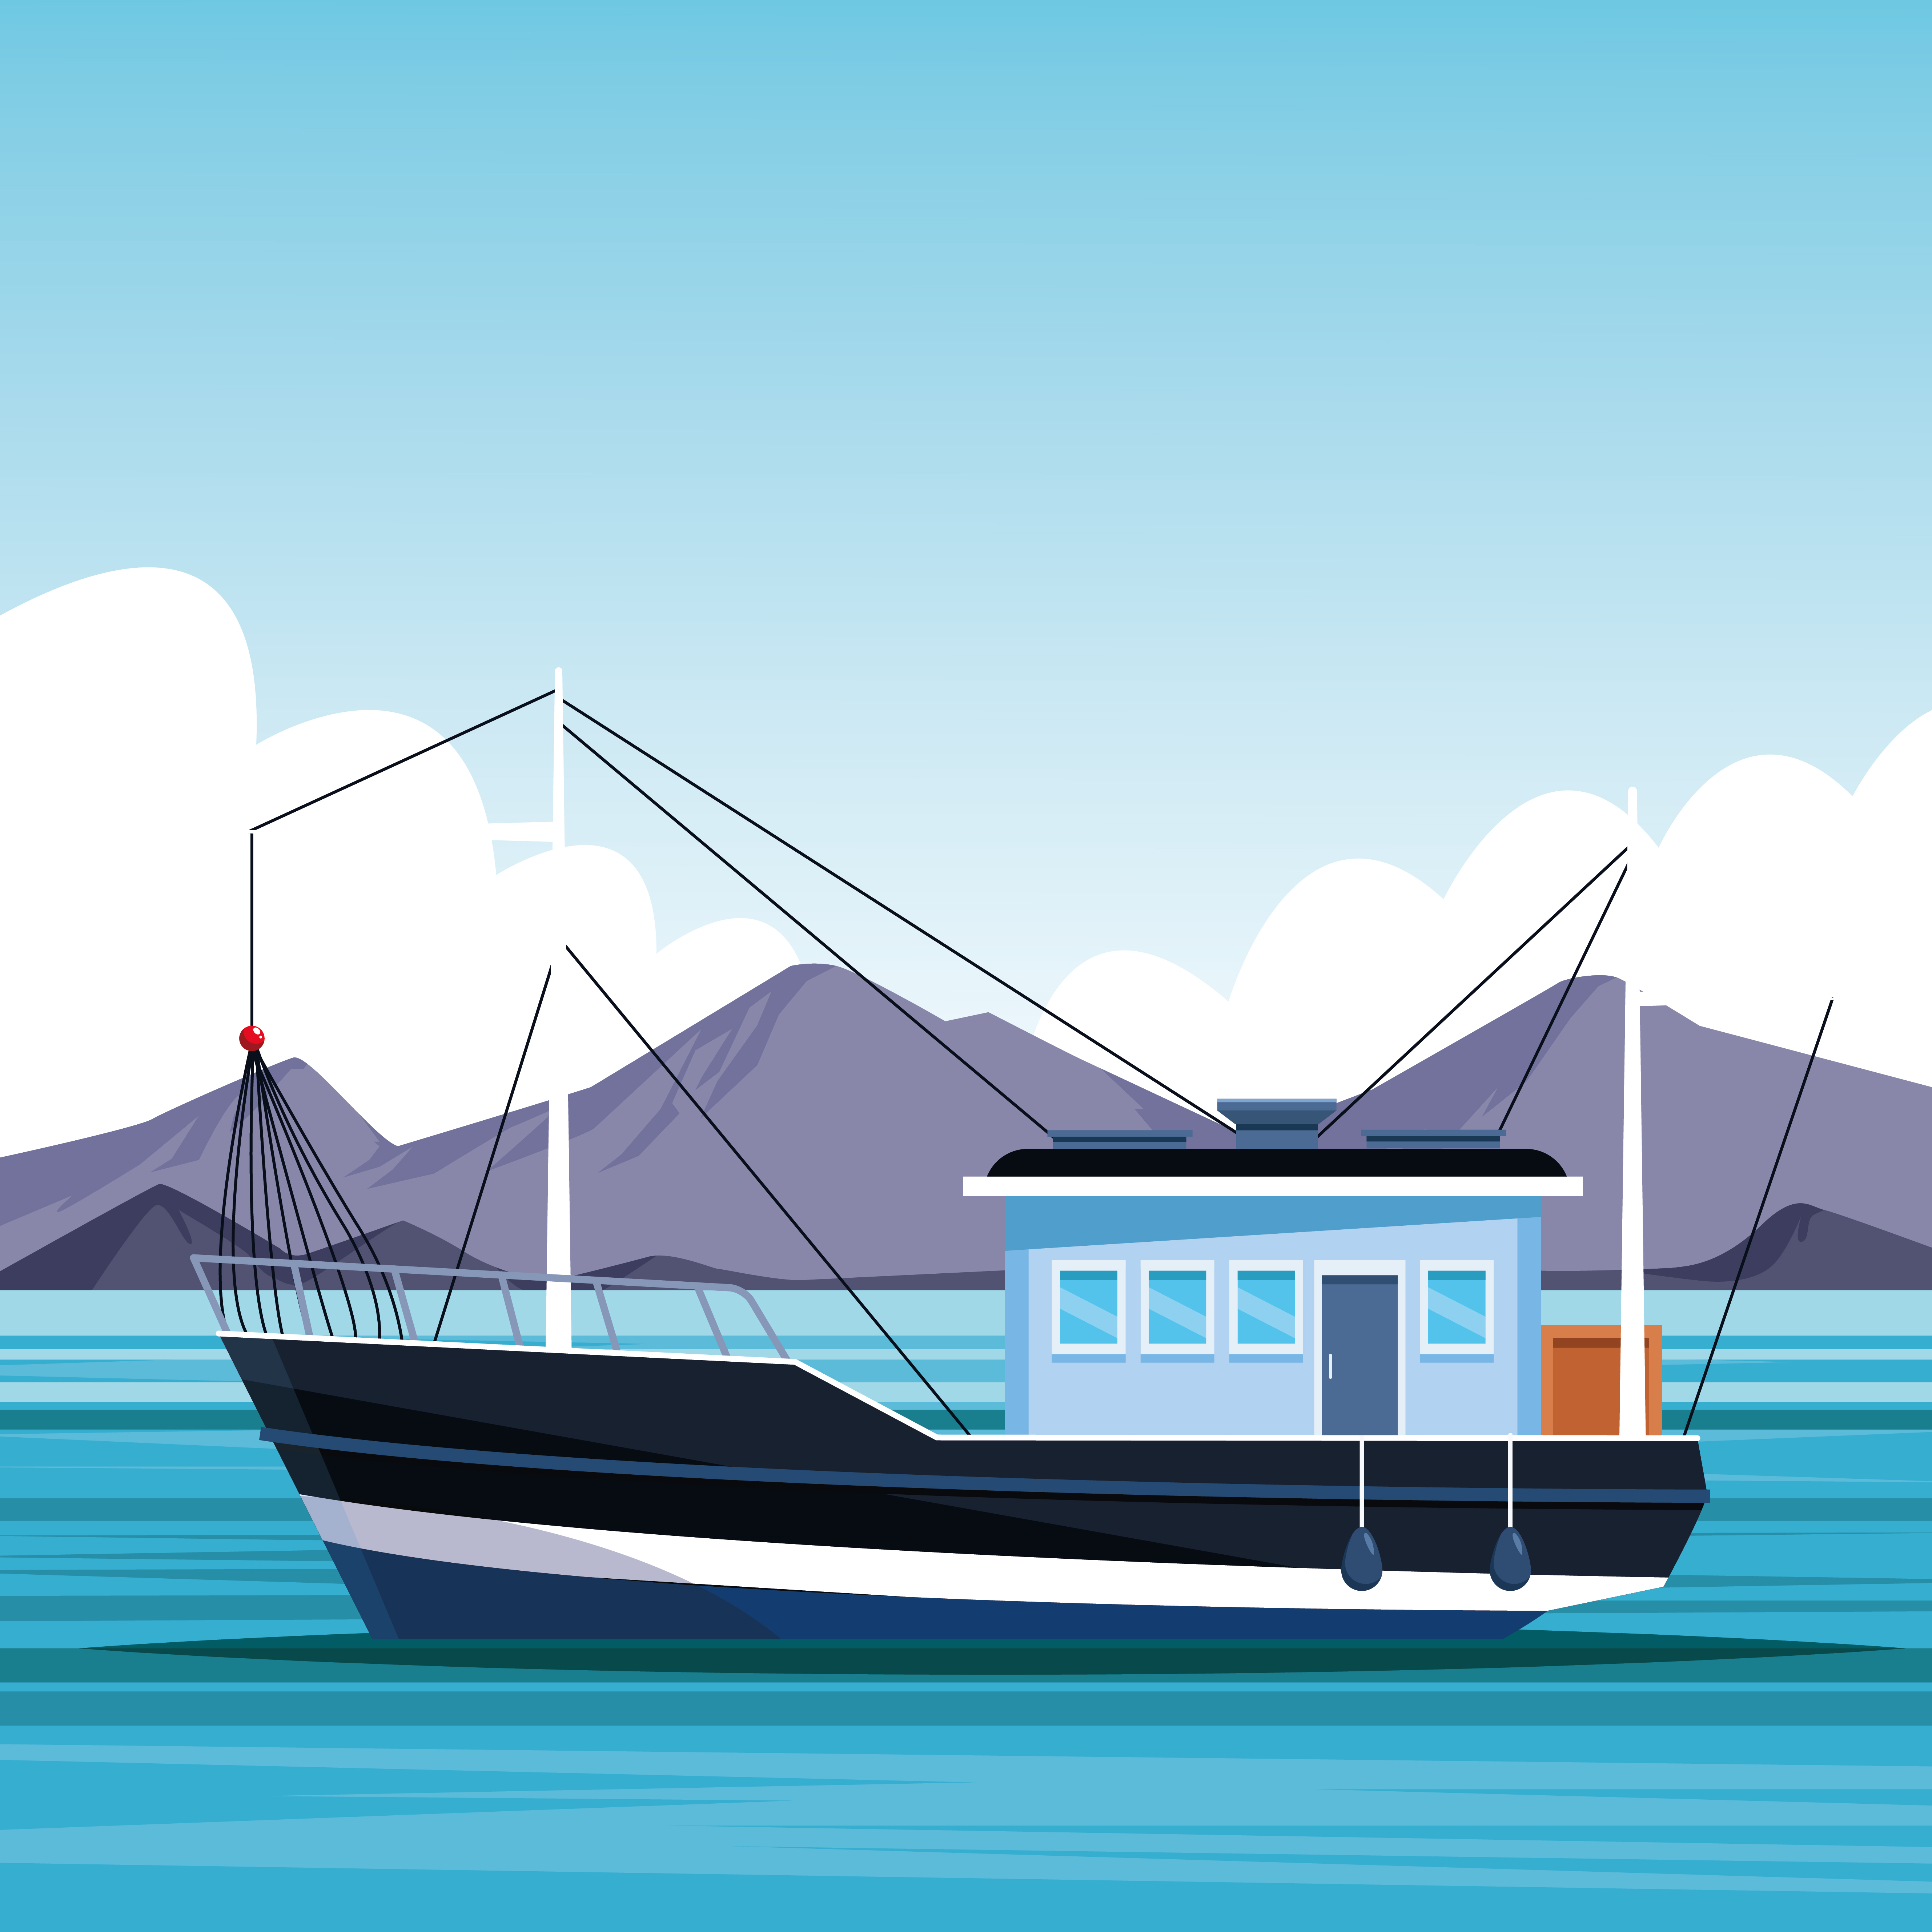 Download fishing boat cartoon - Download Free Vectors, Clipart ...